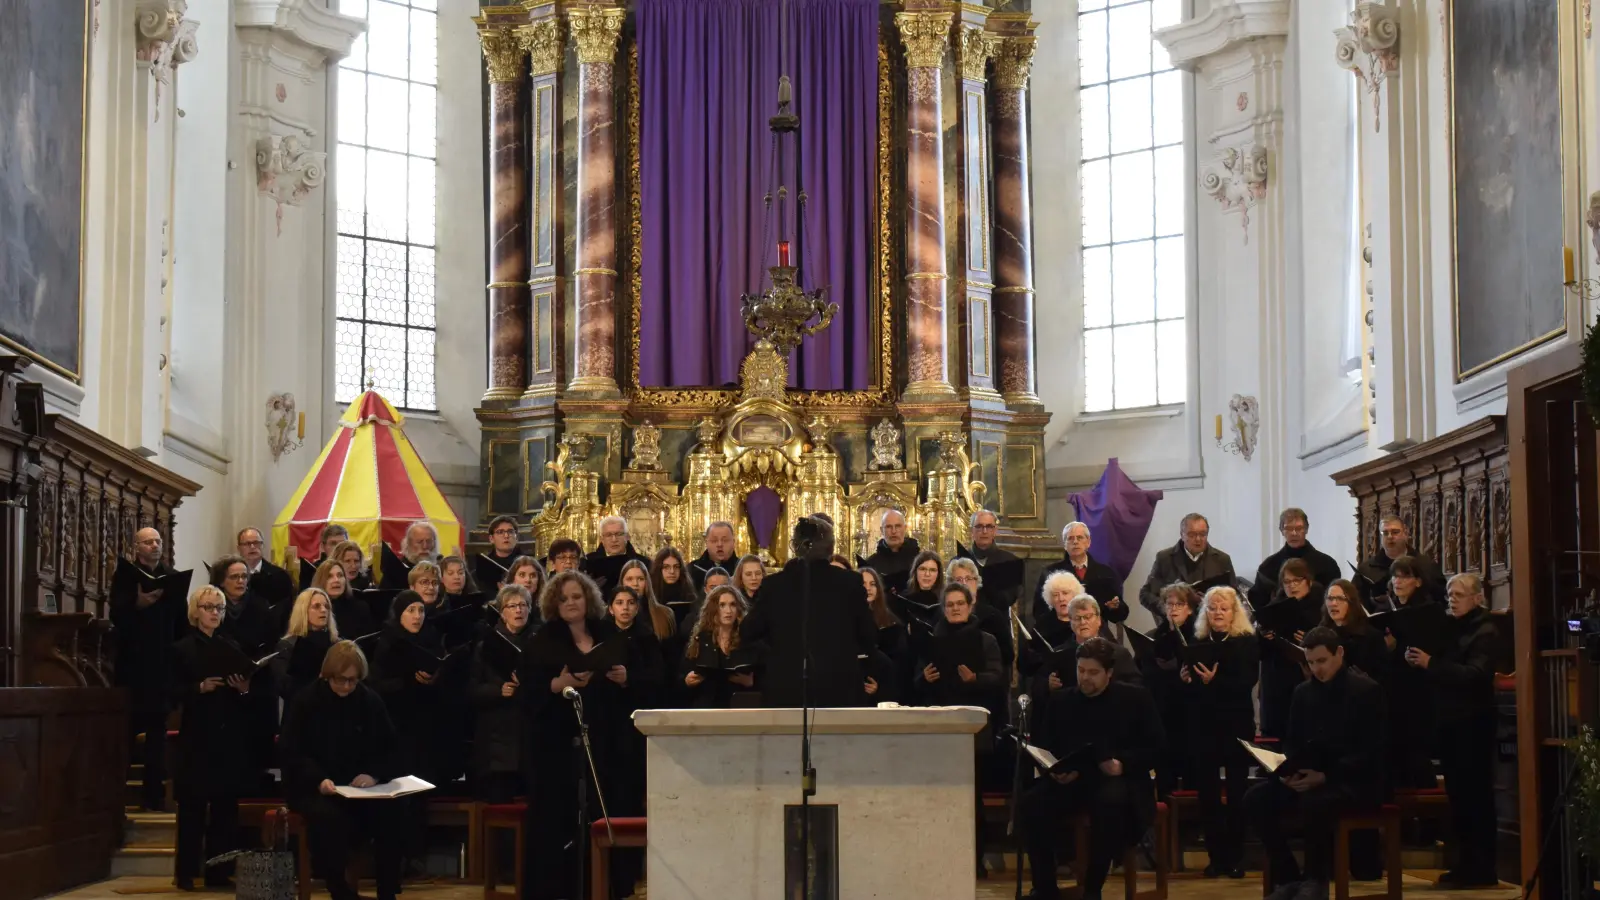 Der Chor, die hochkarätigen Solistinnen und Solisten, Orgelklänge, ein Sprecher und zwei überzeugende Schauspieler begeisterten die Besucher in der imposanten Kulisse der Stiftsbasilika. (Foto: Christina Özbek)